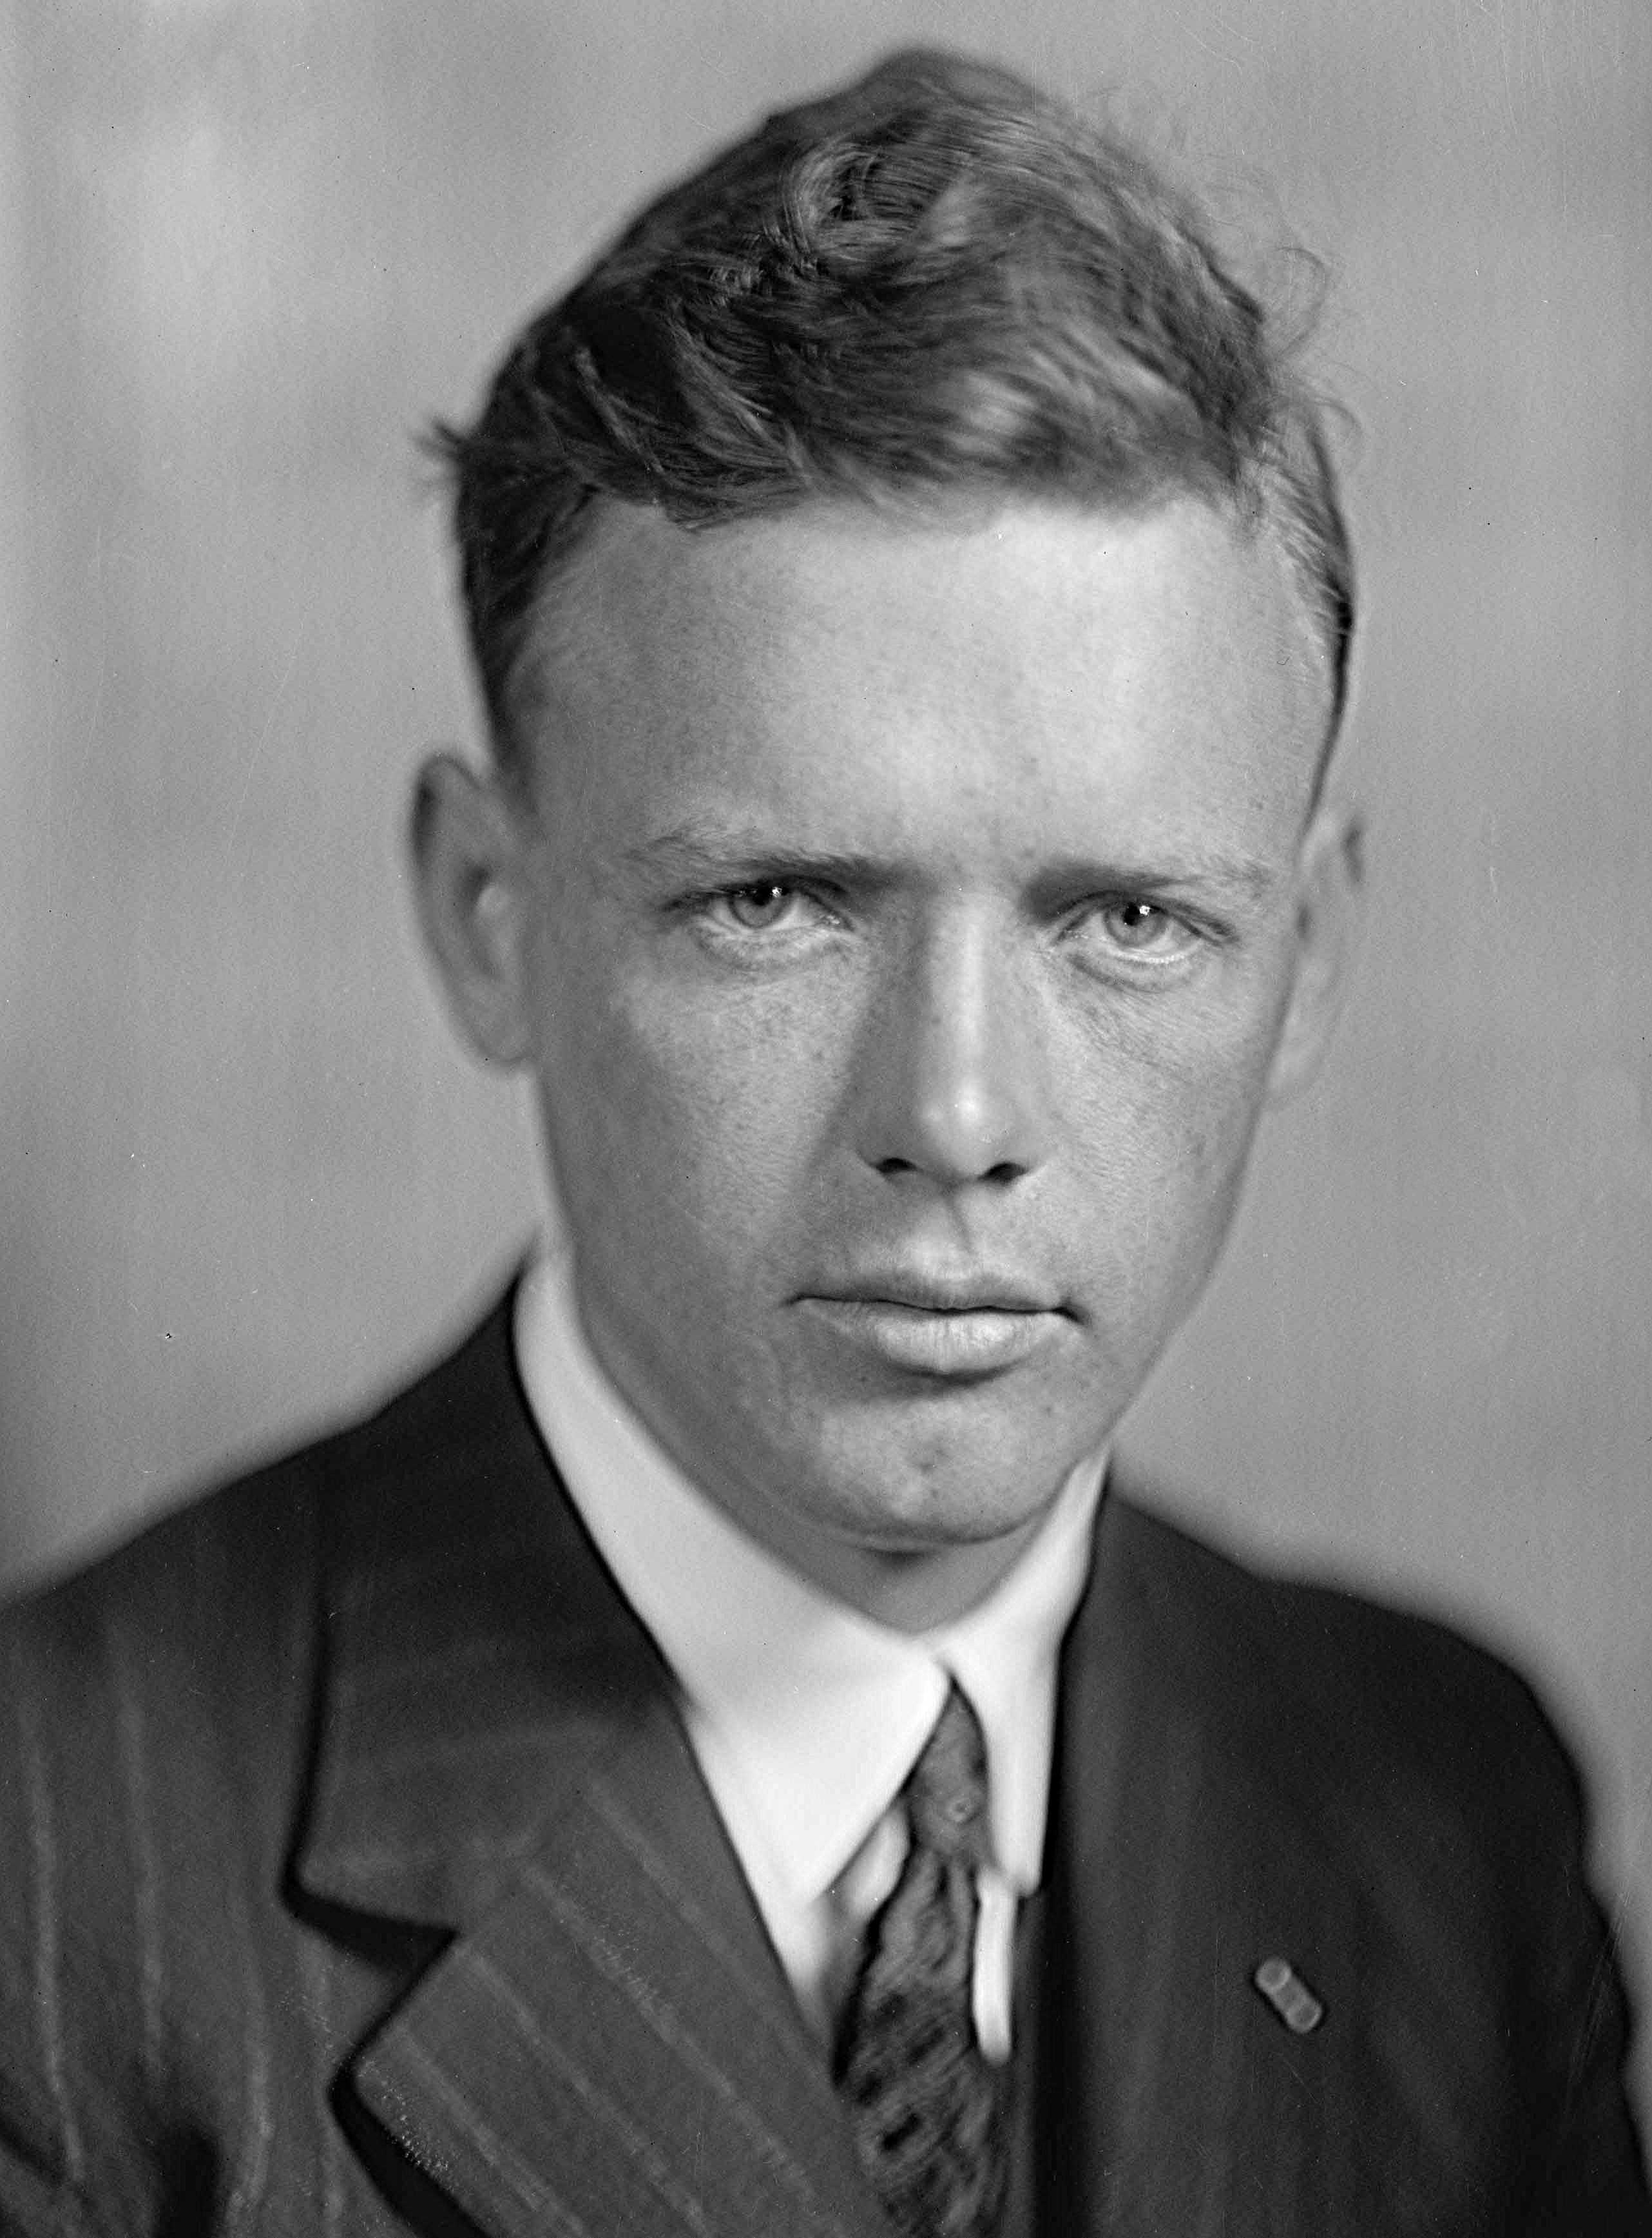 auteur Charles Lindbergh de la citation Je crois que pour la survie permanente, l'homme doit équilibrer la science avec d'autres qualités de vie, des qualités du corps et de l'esprit ainsi que celles de l'esprit - les qualités qu'il ne peut pas développer lorsqu'il laisse la mécanique et le luxe l'isoler trop à partir de la terre à laquelle il était né.